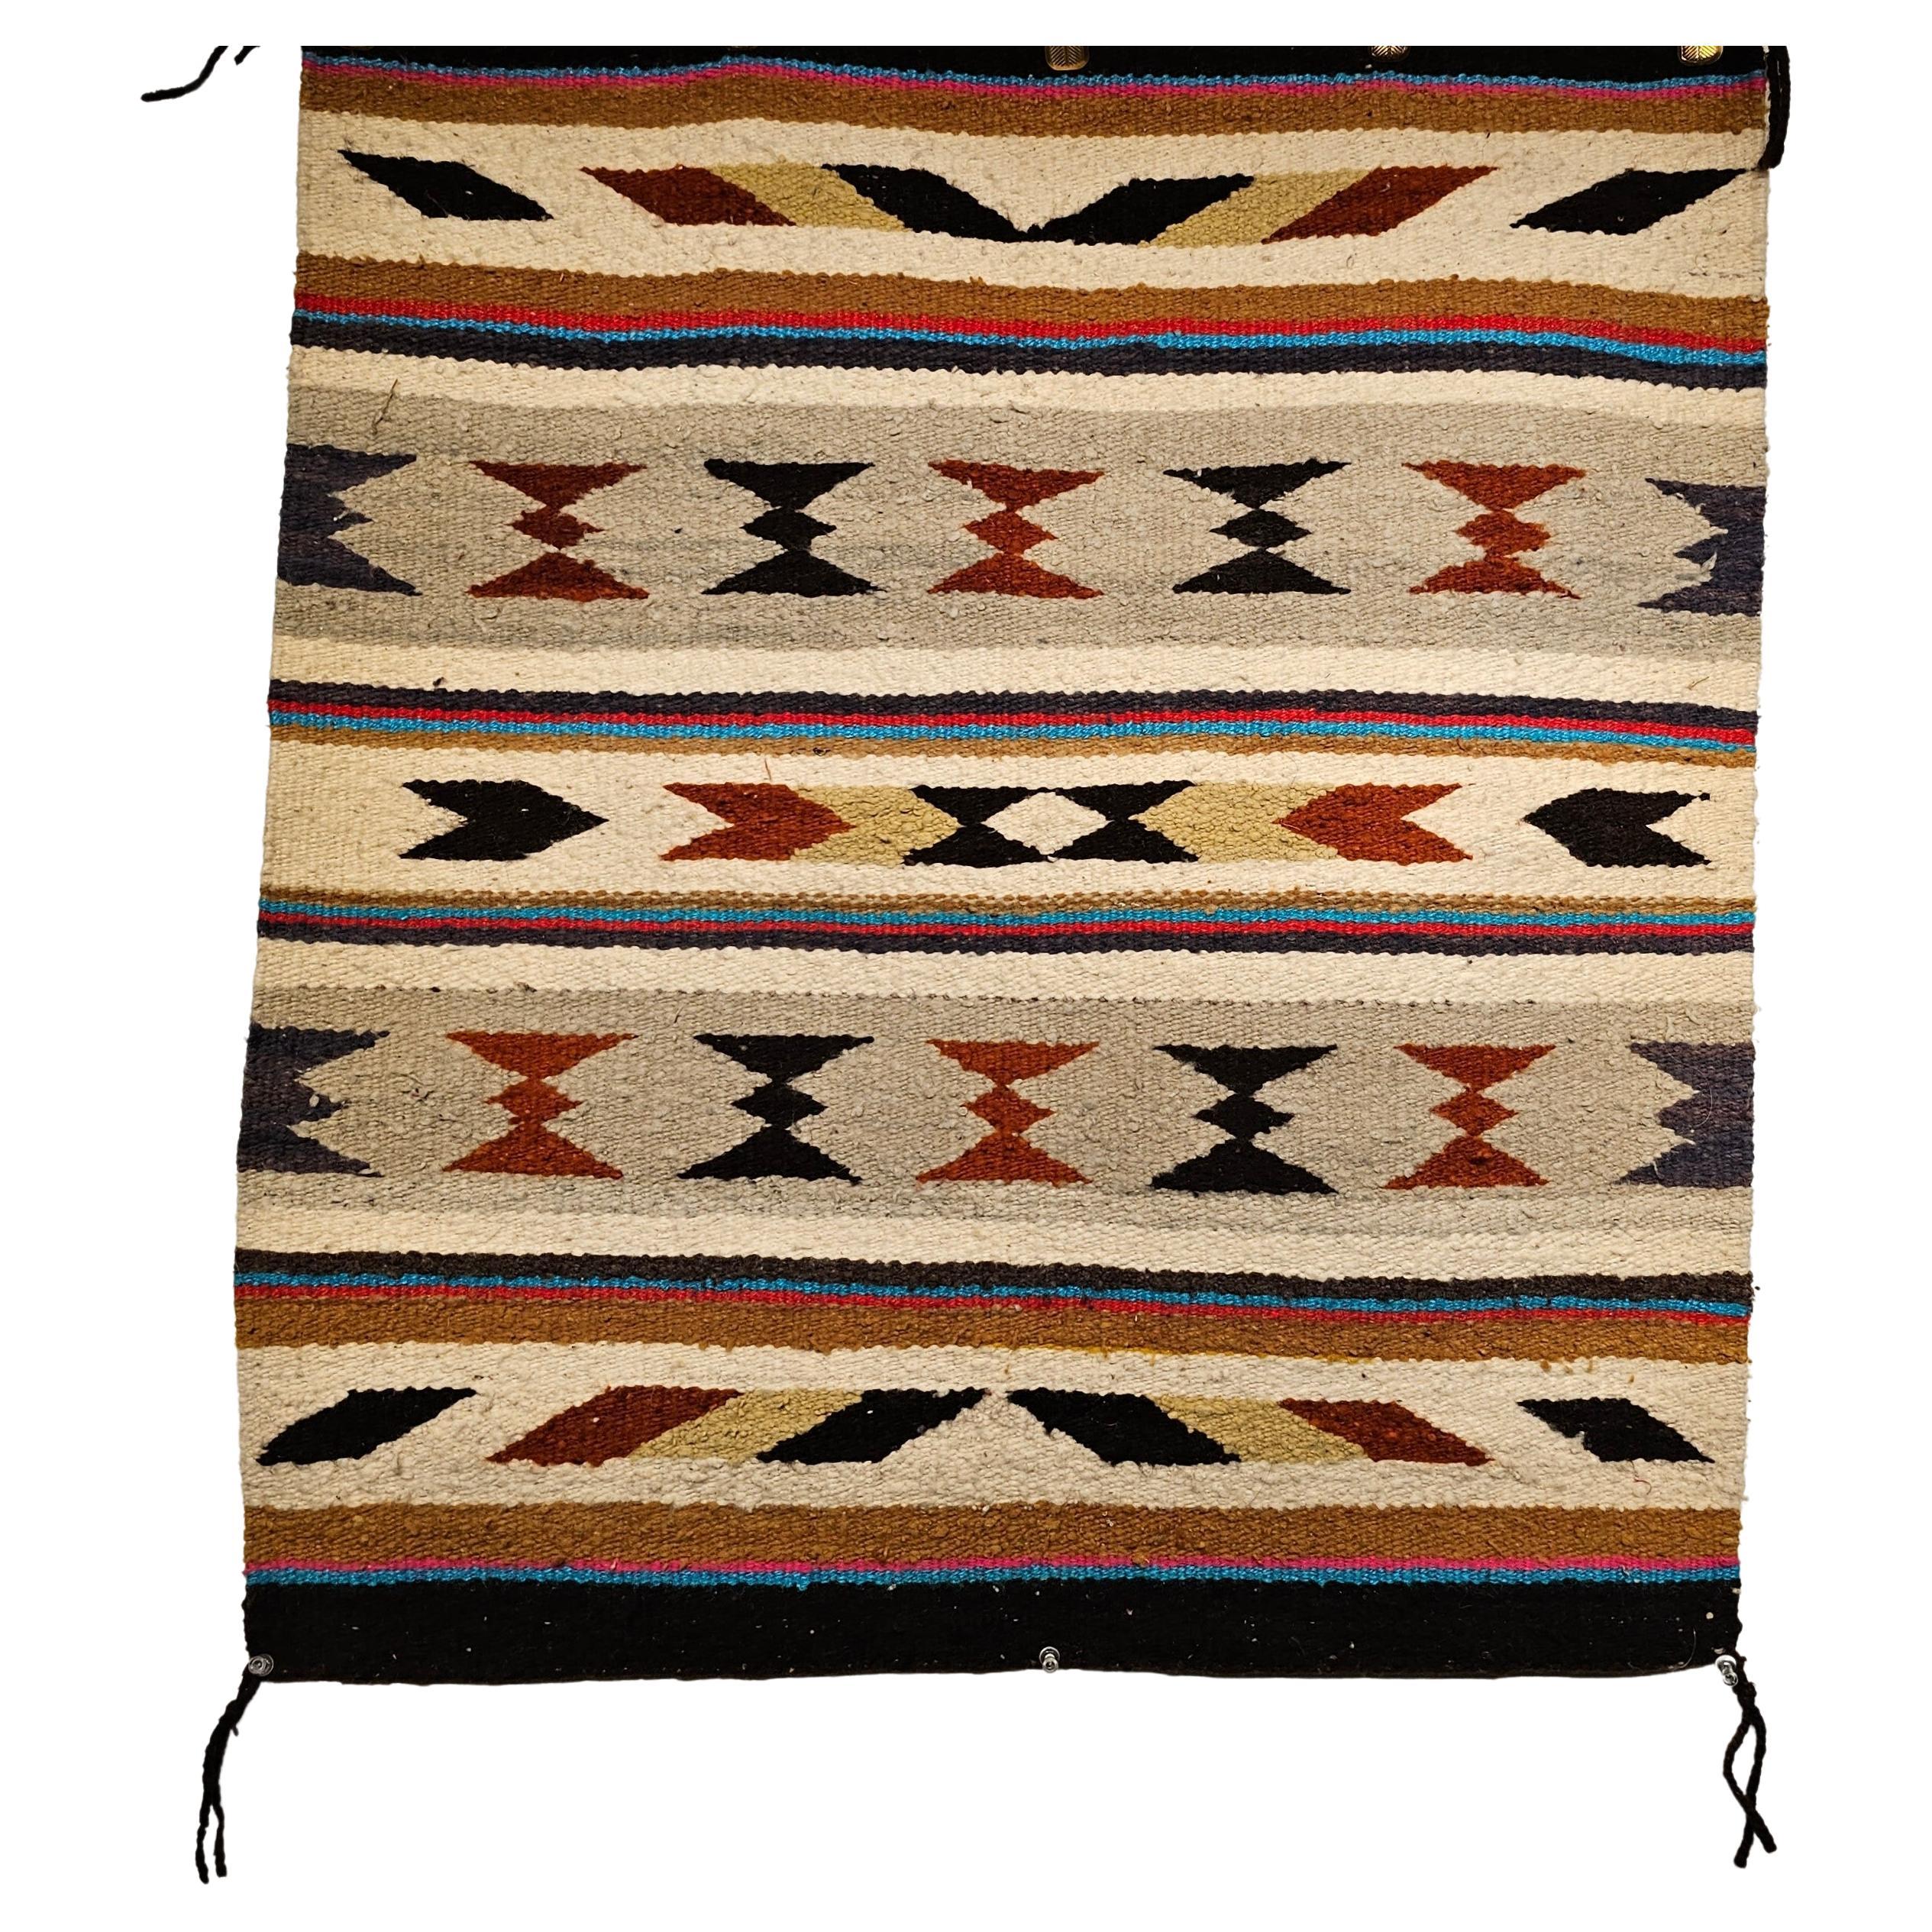 Amerikanische Navajo-Satteldecke mit Streifenmuster in Elfenbein, Braun und Rot